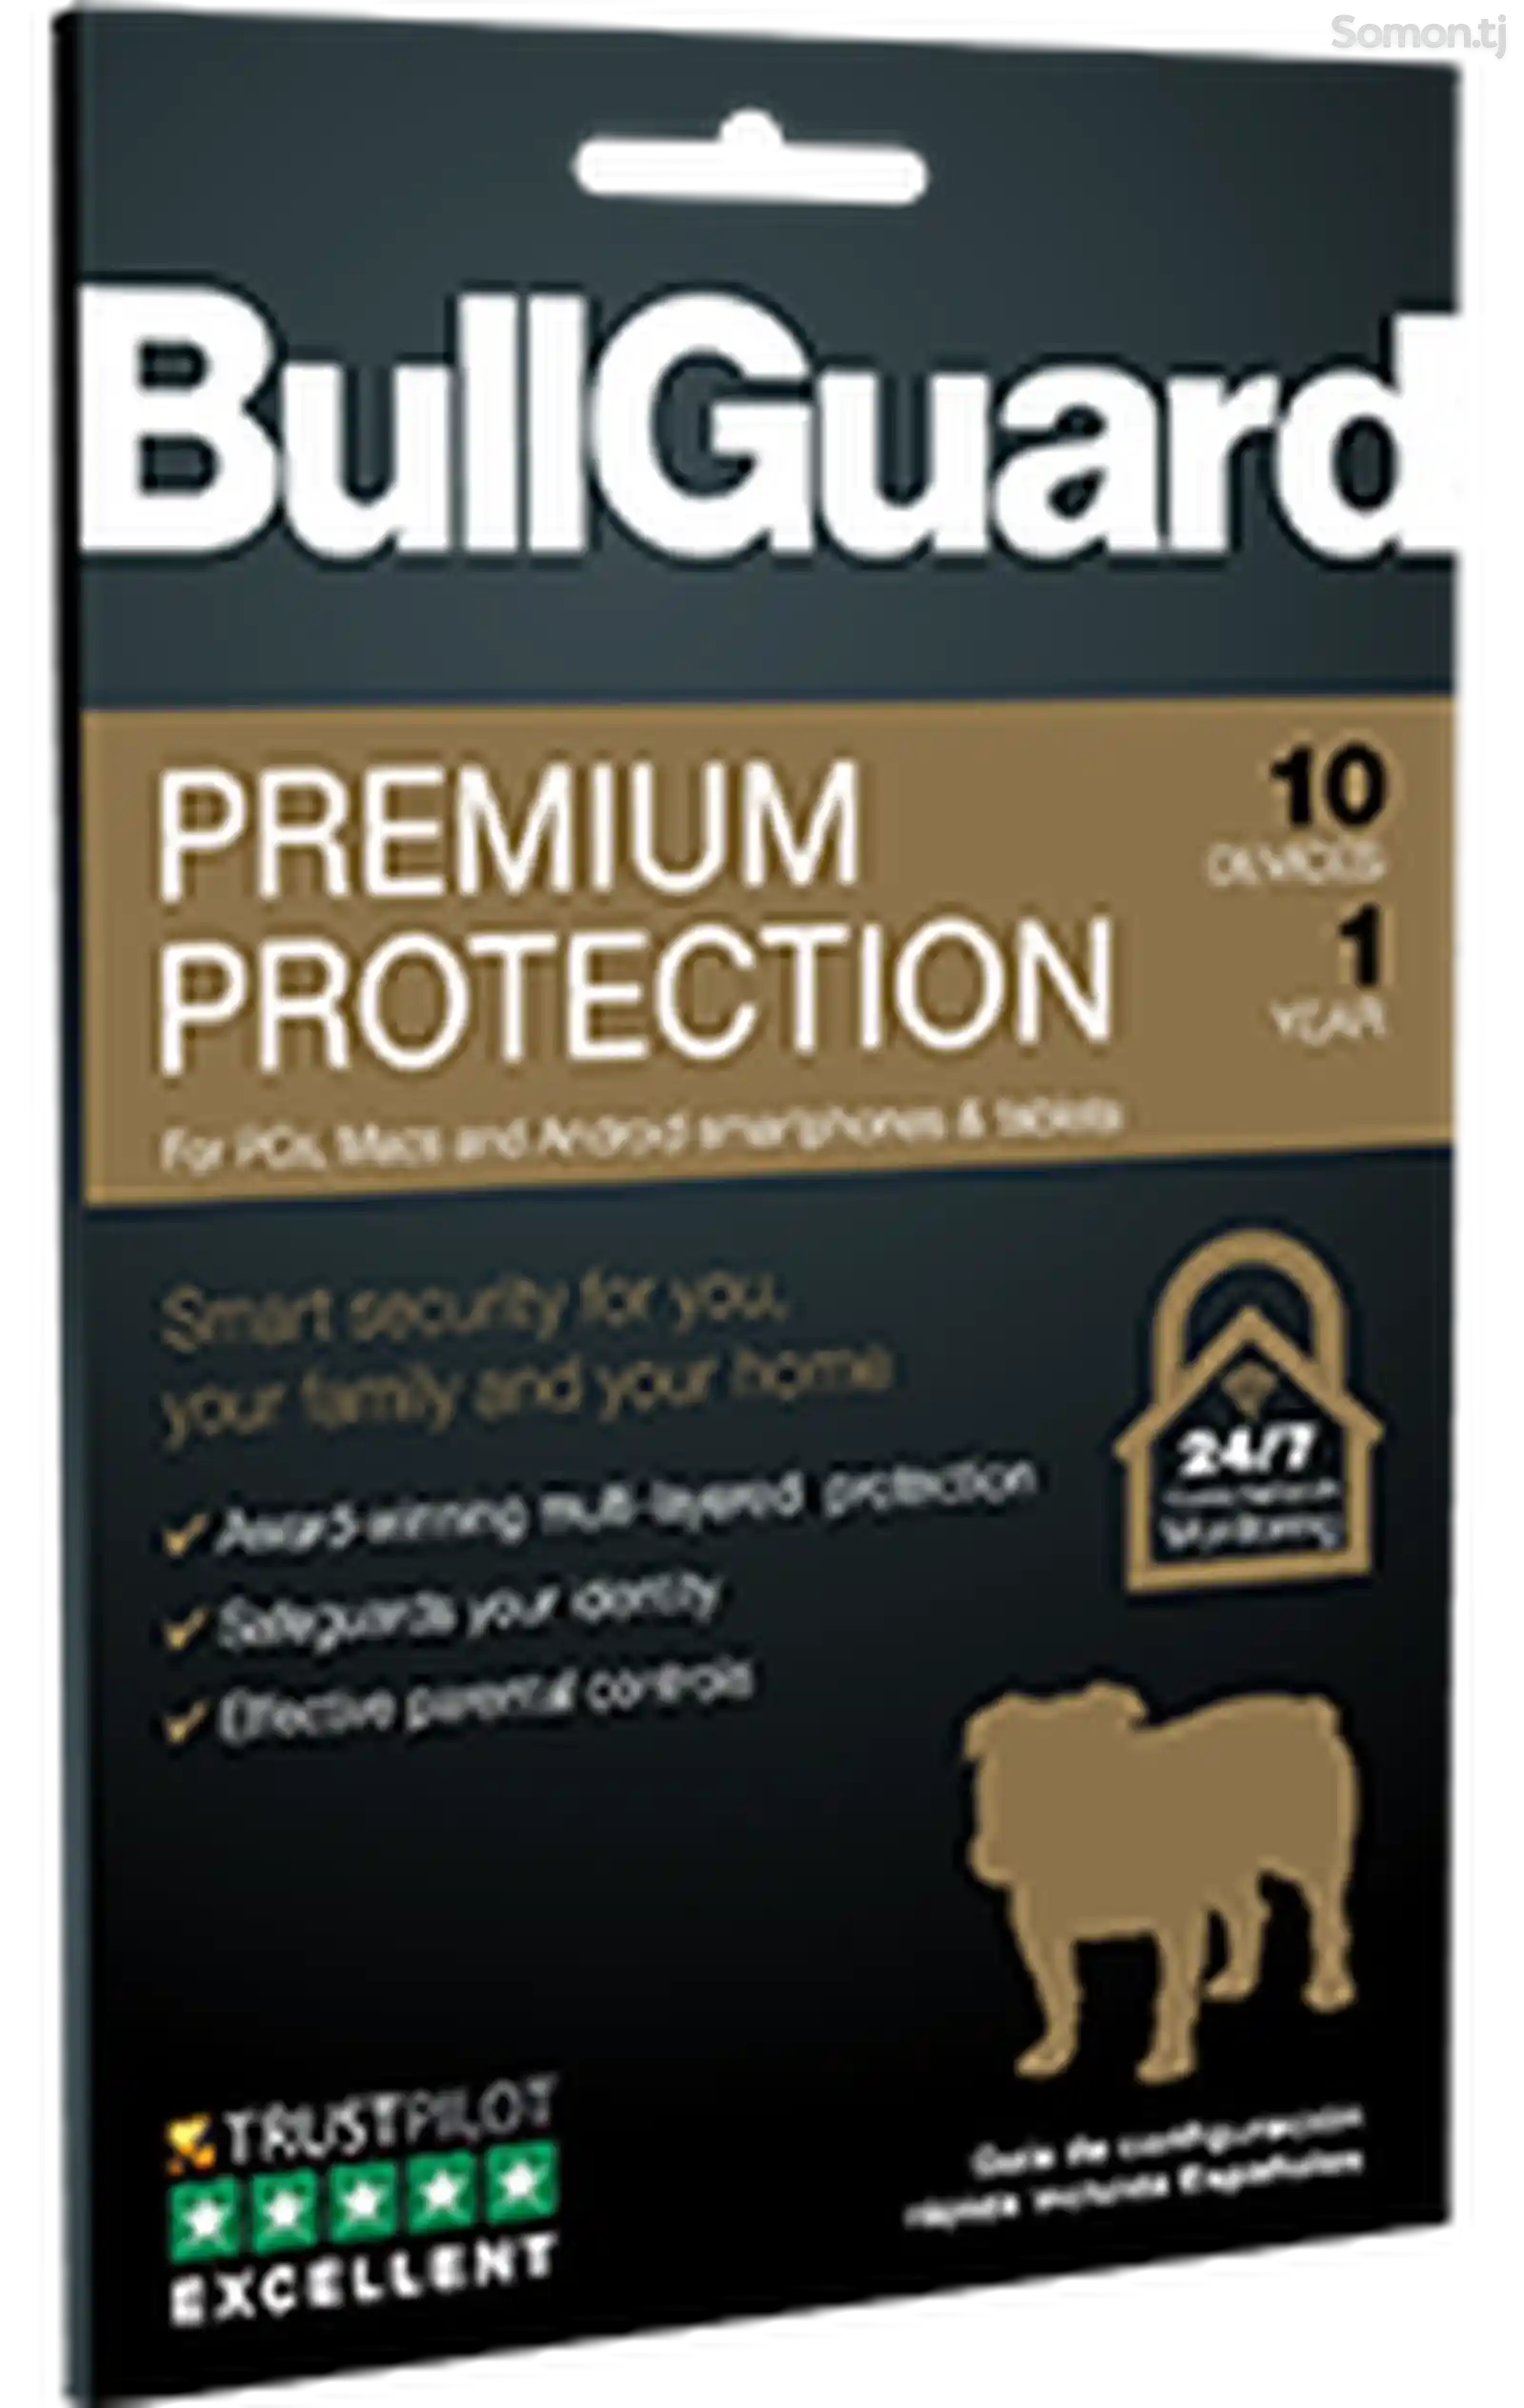 BullGuard Premium Protection - иҷозатнома барои 5 роёна, 1 сол